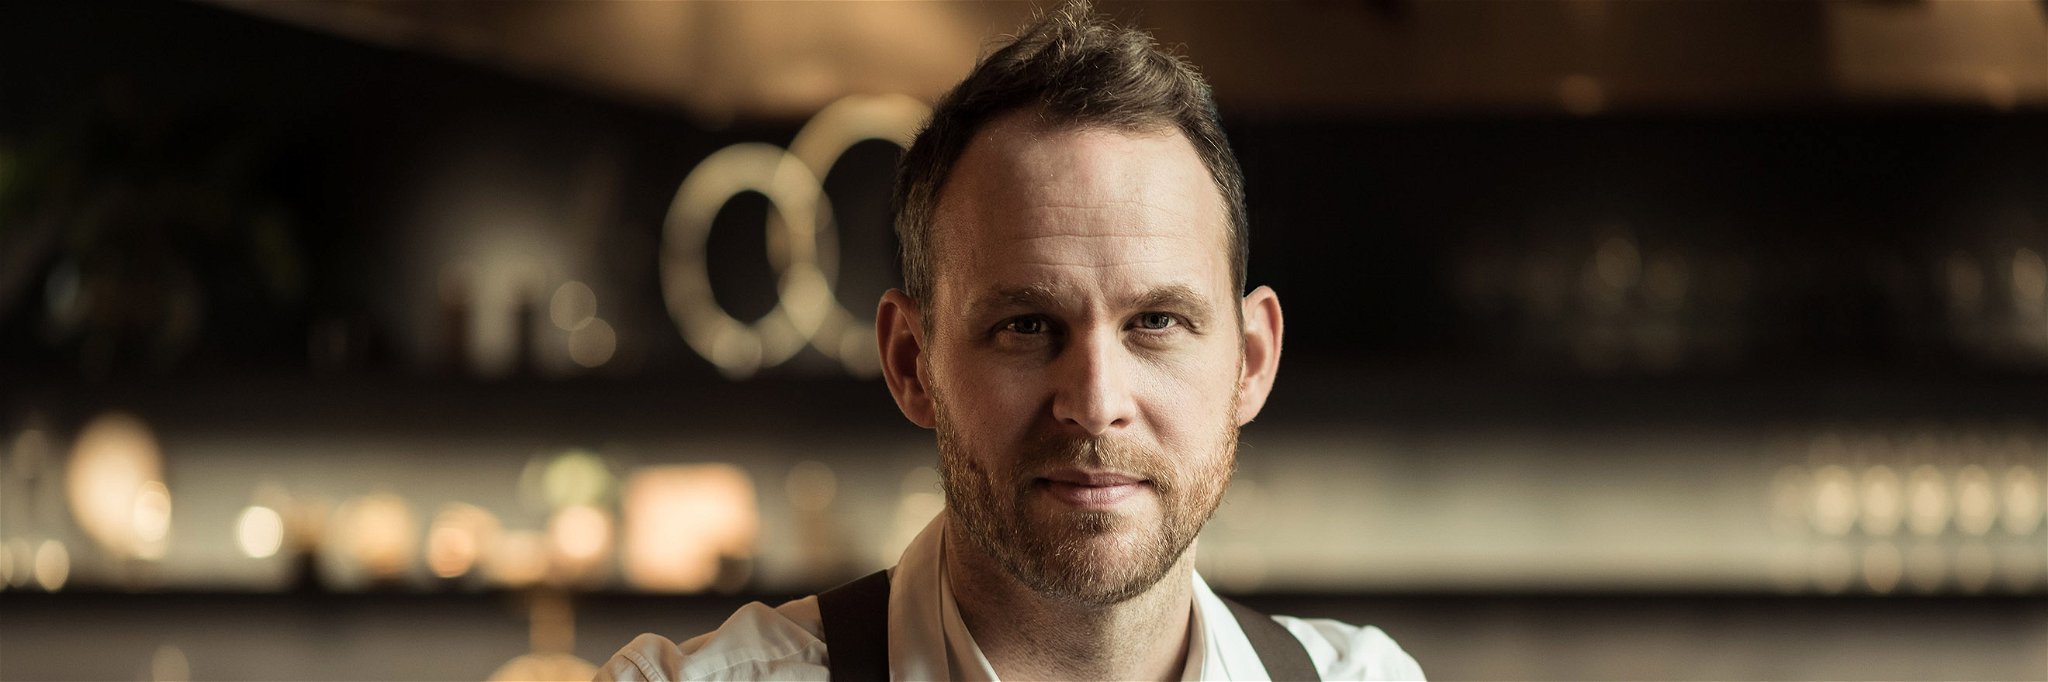 Björn Frantzén gehört zu den besten Köchen der Welt und betreibt aktuell zwei Drei-Sterne-Restaurants.